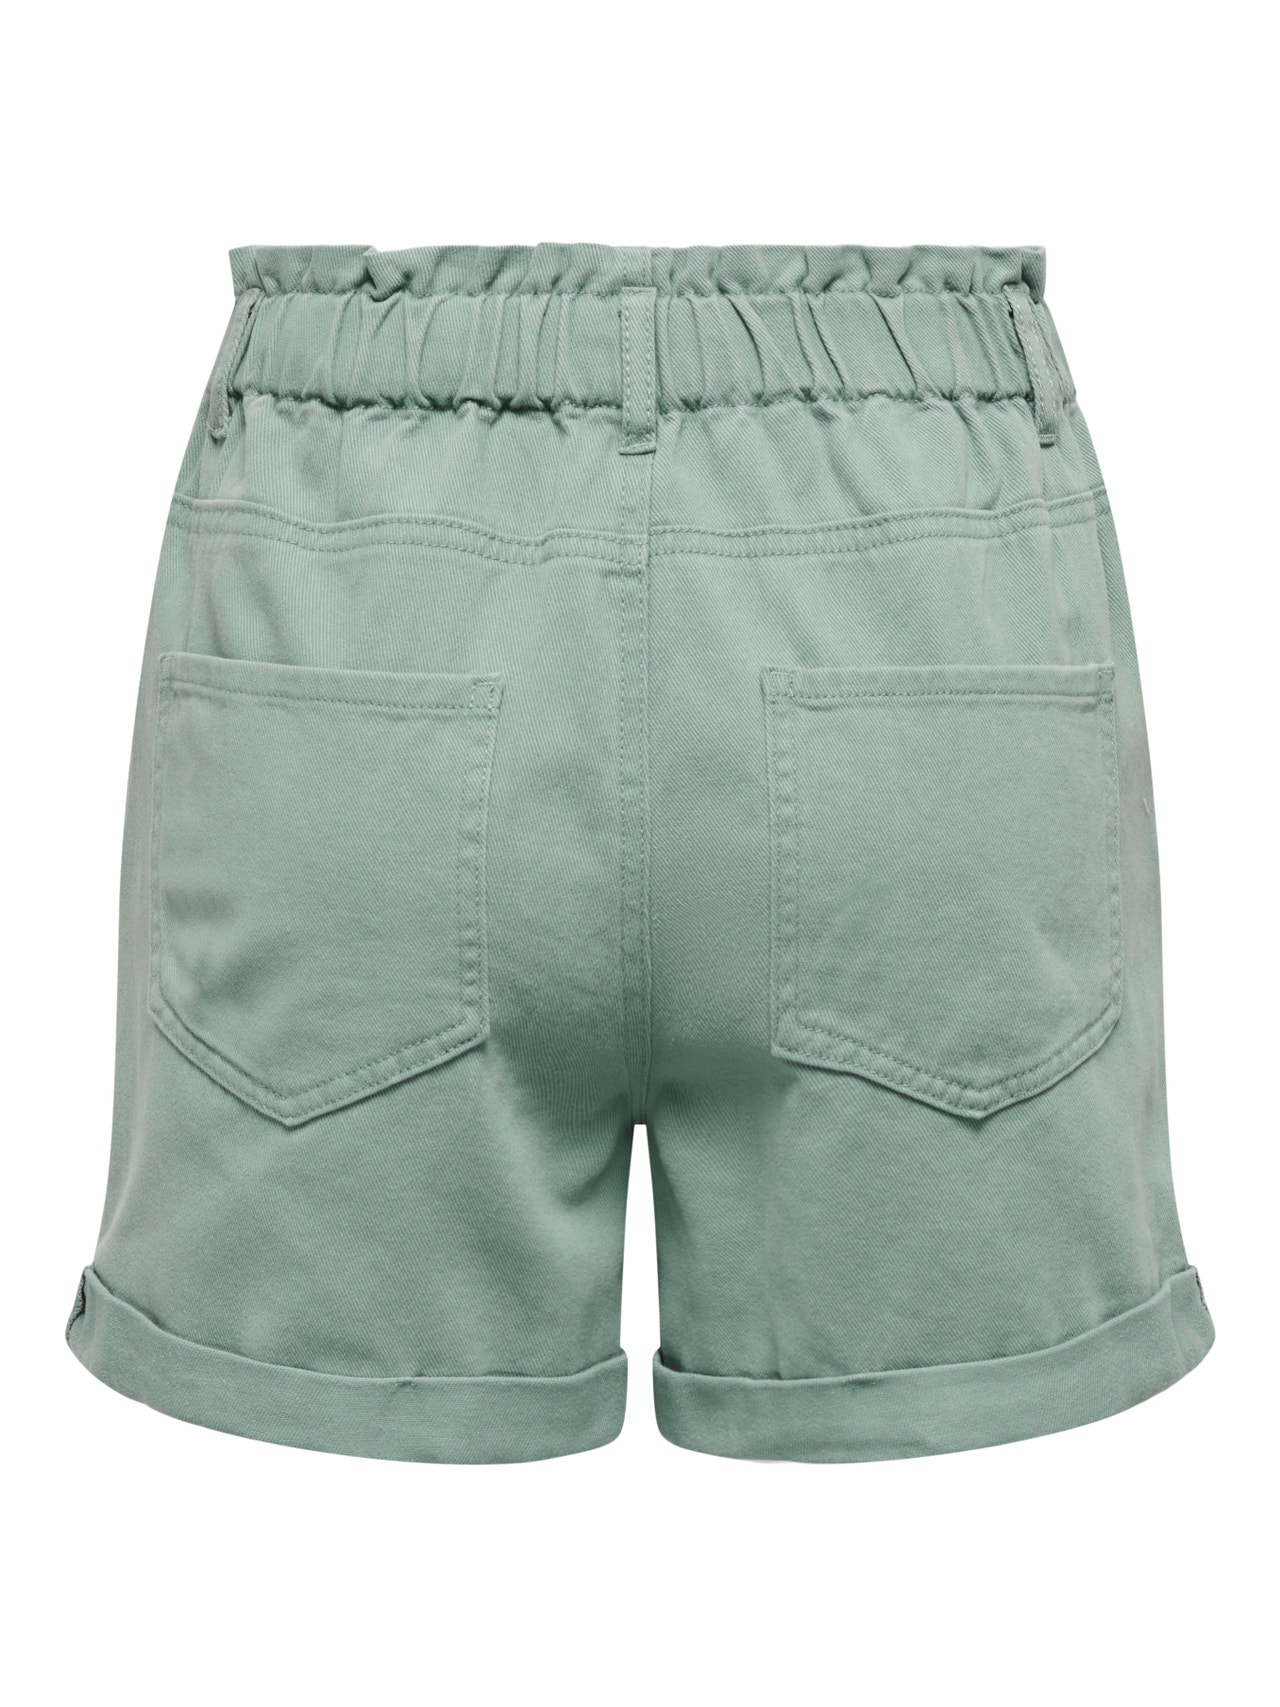 ONLY De cintura alta Shorts -Chinois Green - 15257540